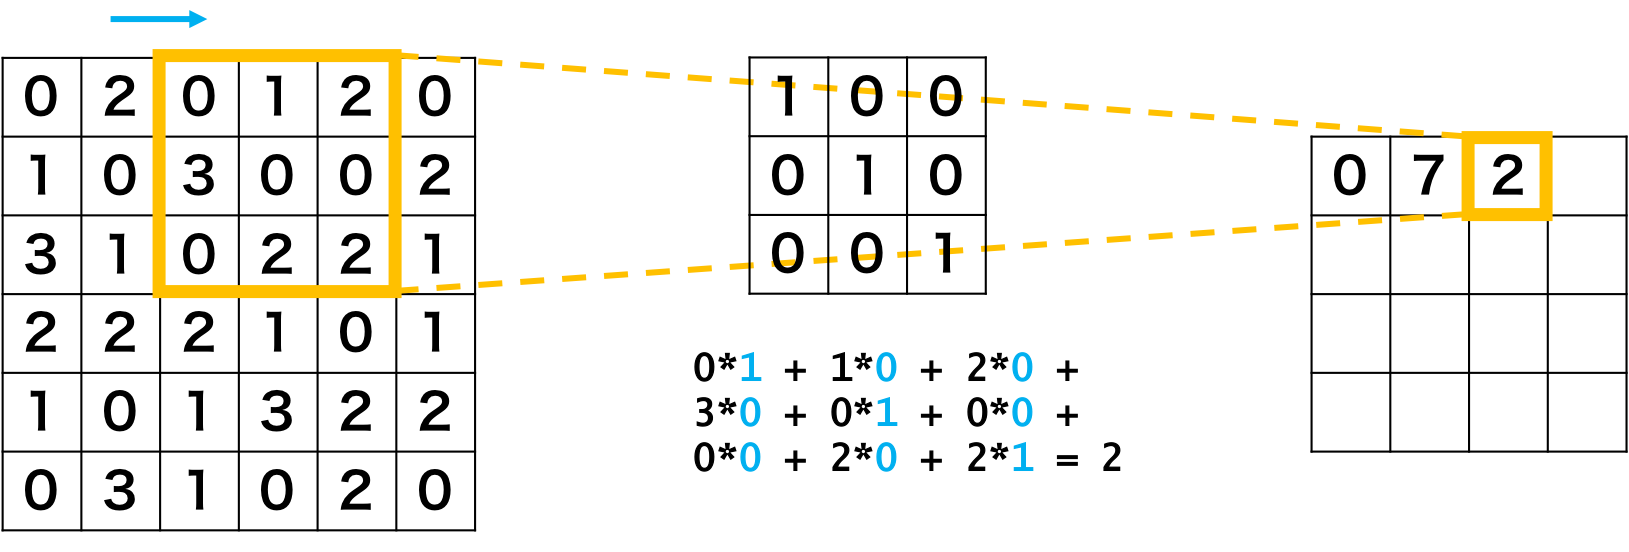 畳み込みニューラルネットワークの畳み込み層の例3